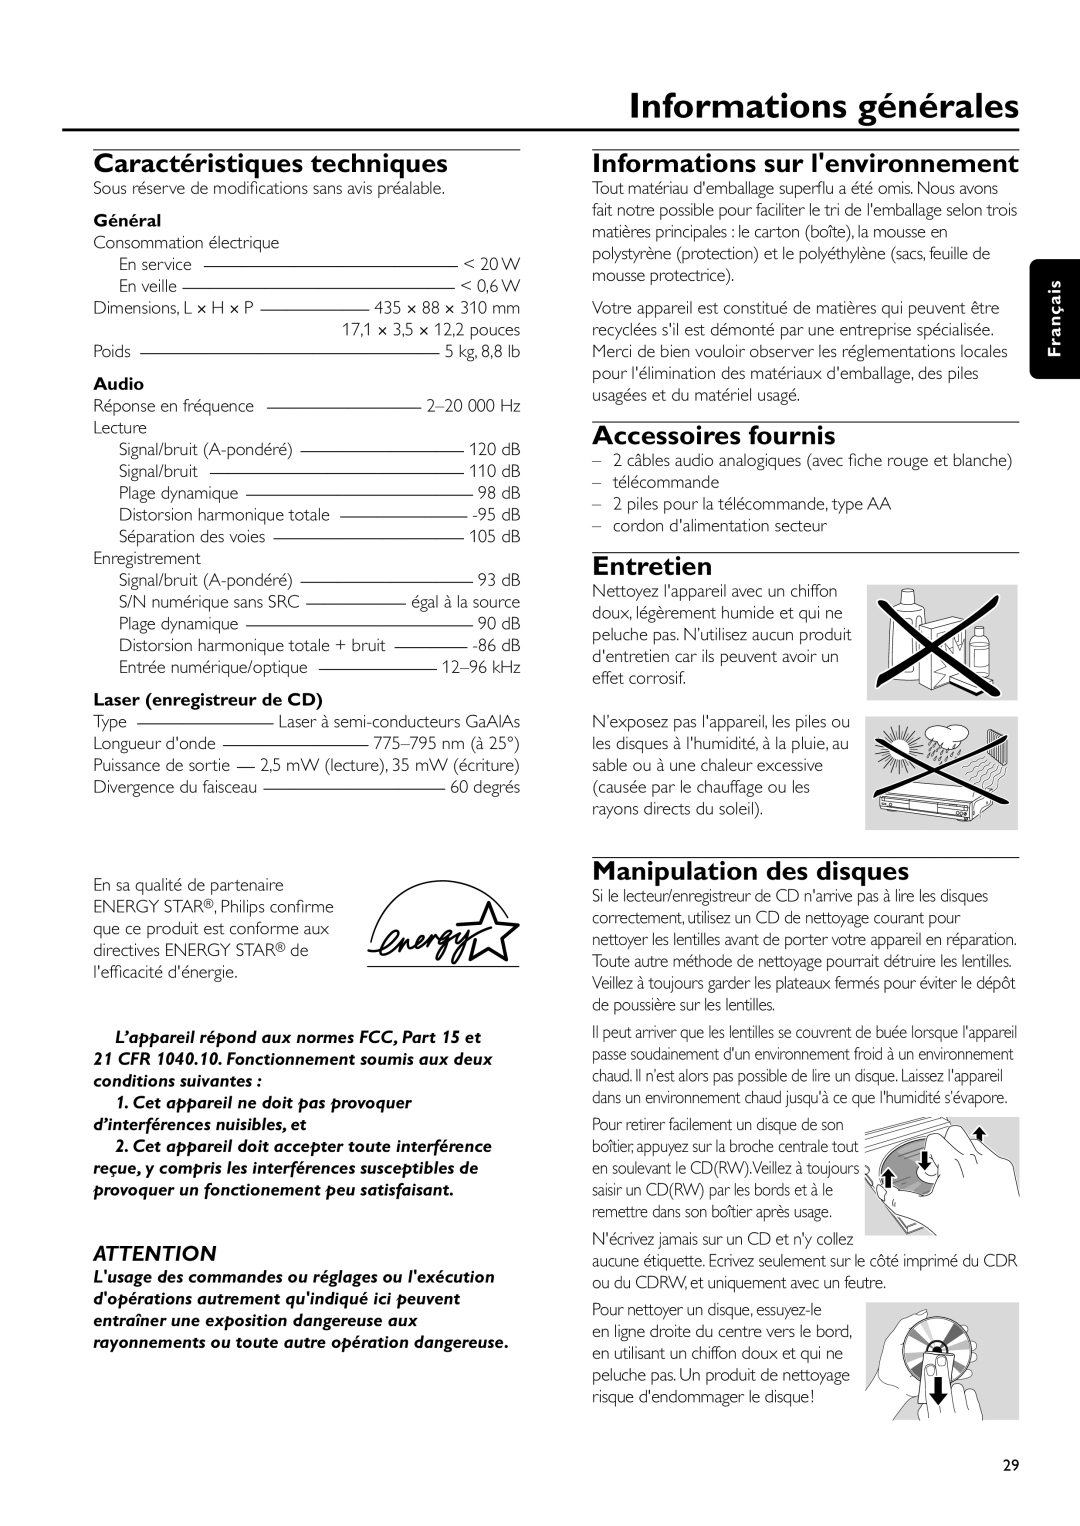 Philips CDR-795 Informations générales, Caractéristiques techniques, Informations sur lenvironnement, Accessoires fournis 